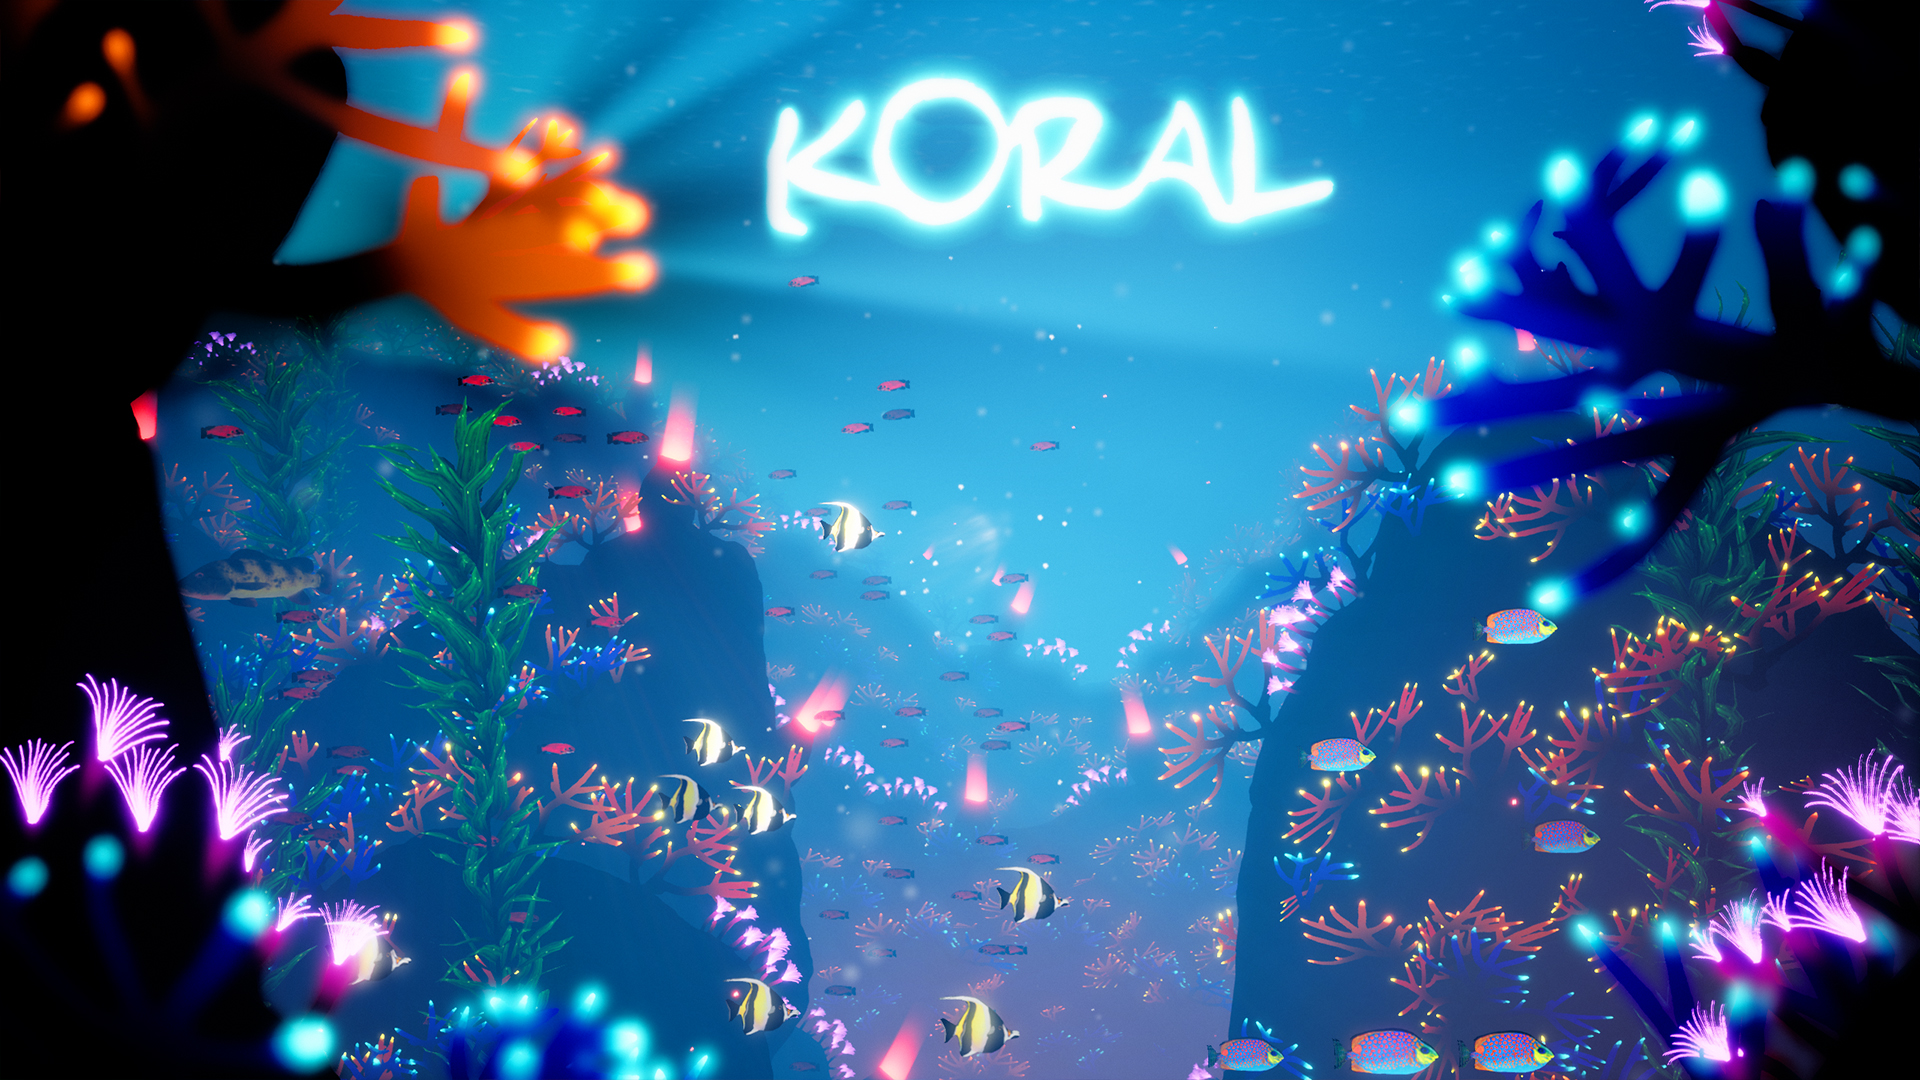 Save 80% on Koral on Steam